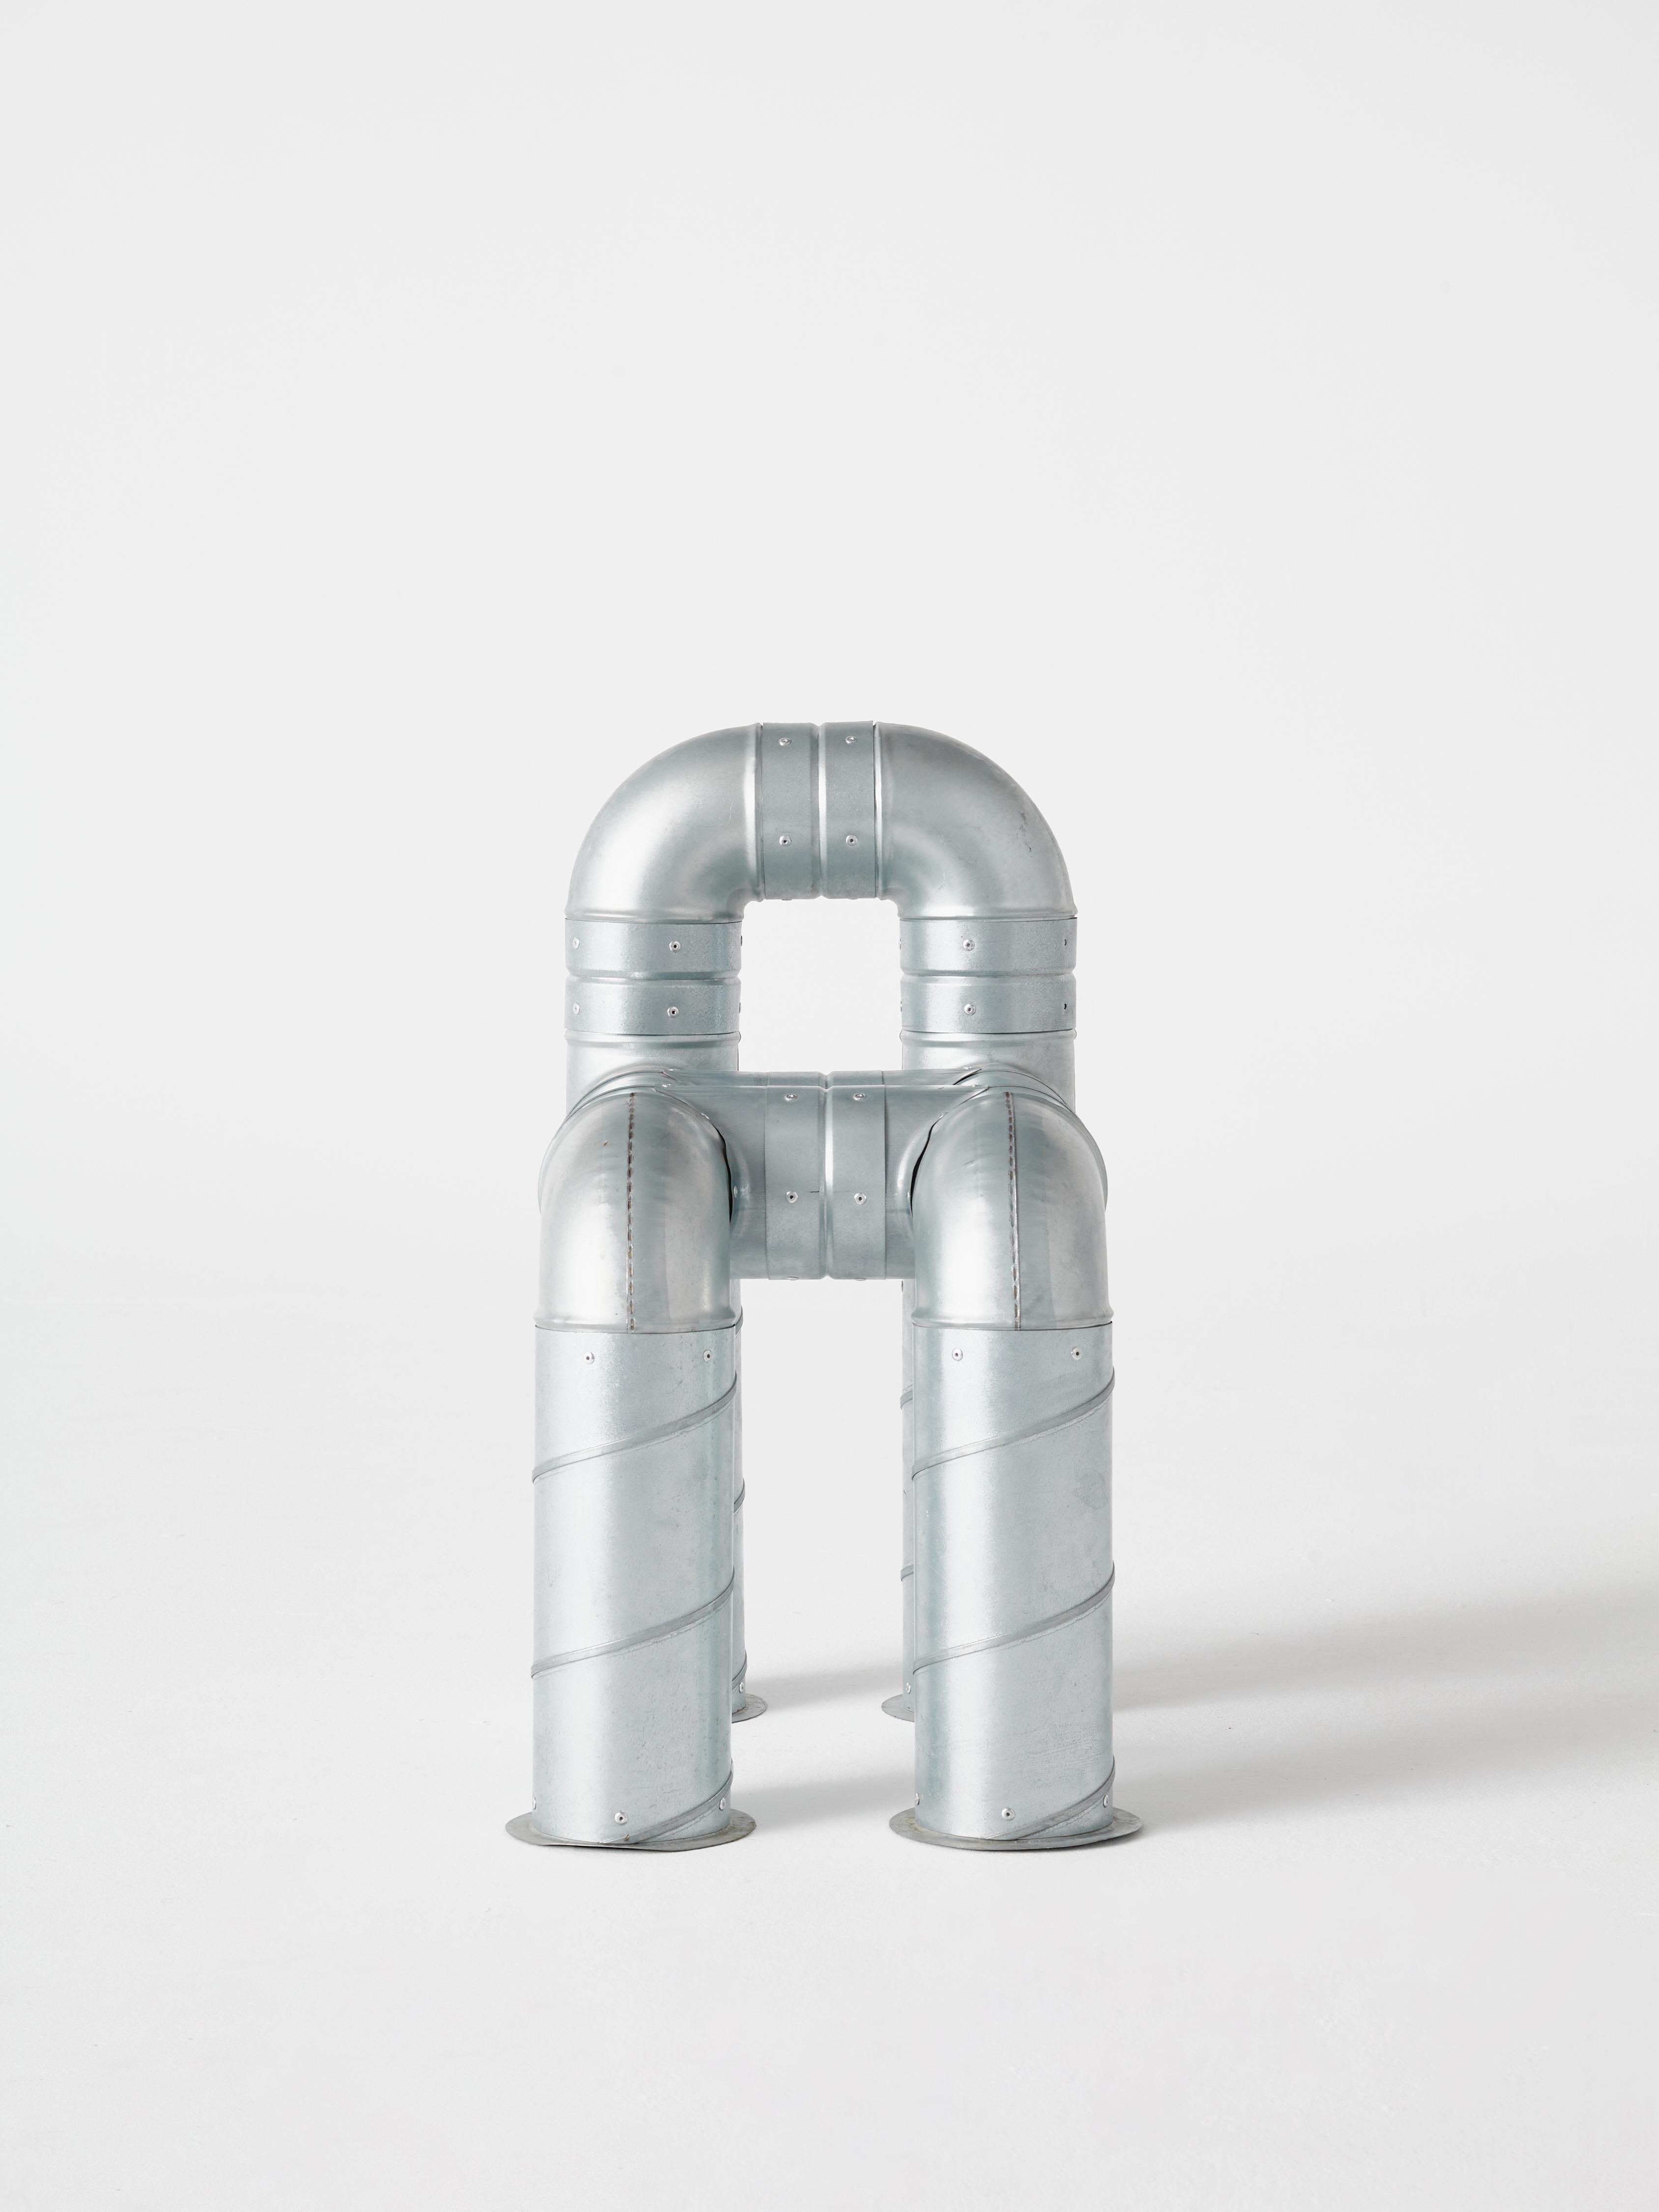 Dieser Stahlrohrstuhl ist Teil der Serie O.F.I.S (Objects From Intersticial Space), einer fortlaufenden Untersuchung des erzählerischen Potenzials von Industriematerialien. Muñoz entwarf den Tubular Chair als eine Erkundung des strukturellen